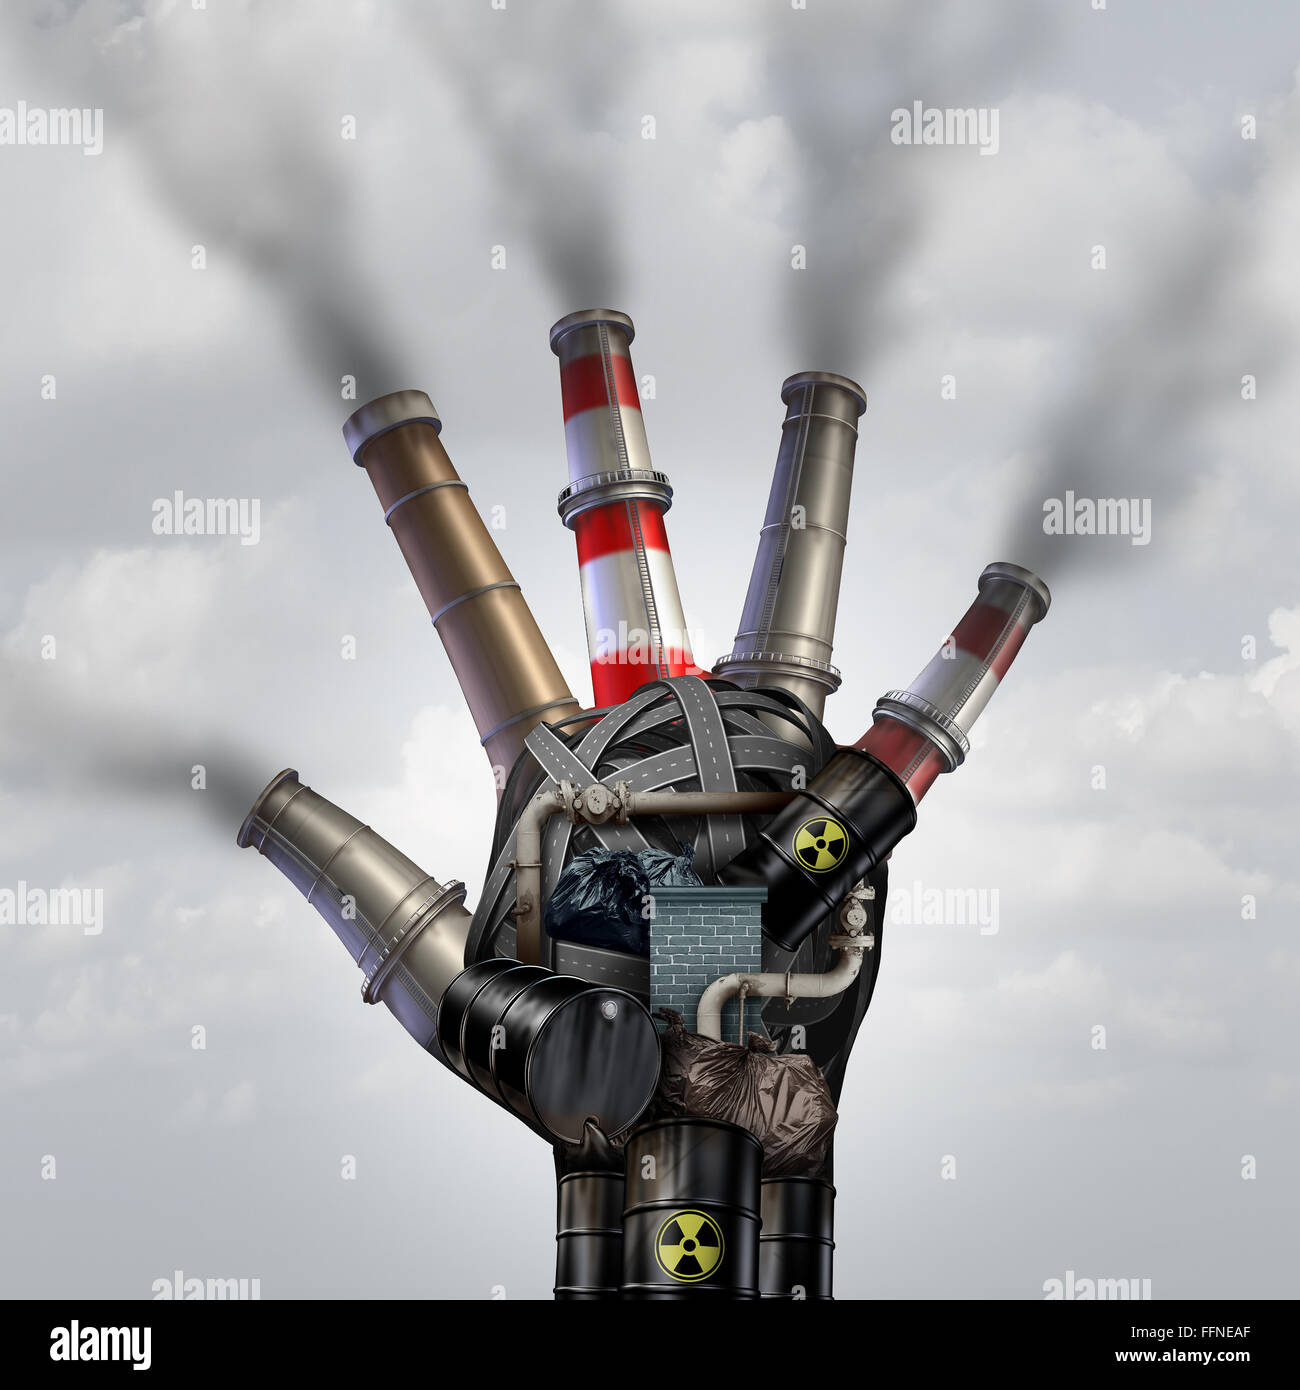 Künstlicher Verschmutzung giftigen Rauch Stopp-Symbol als eine schmutzige Industriebetrieb mit Müll Rauch Stacks und einer petrochemischen Raffinerie Stockfoto